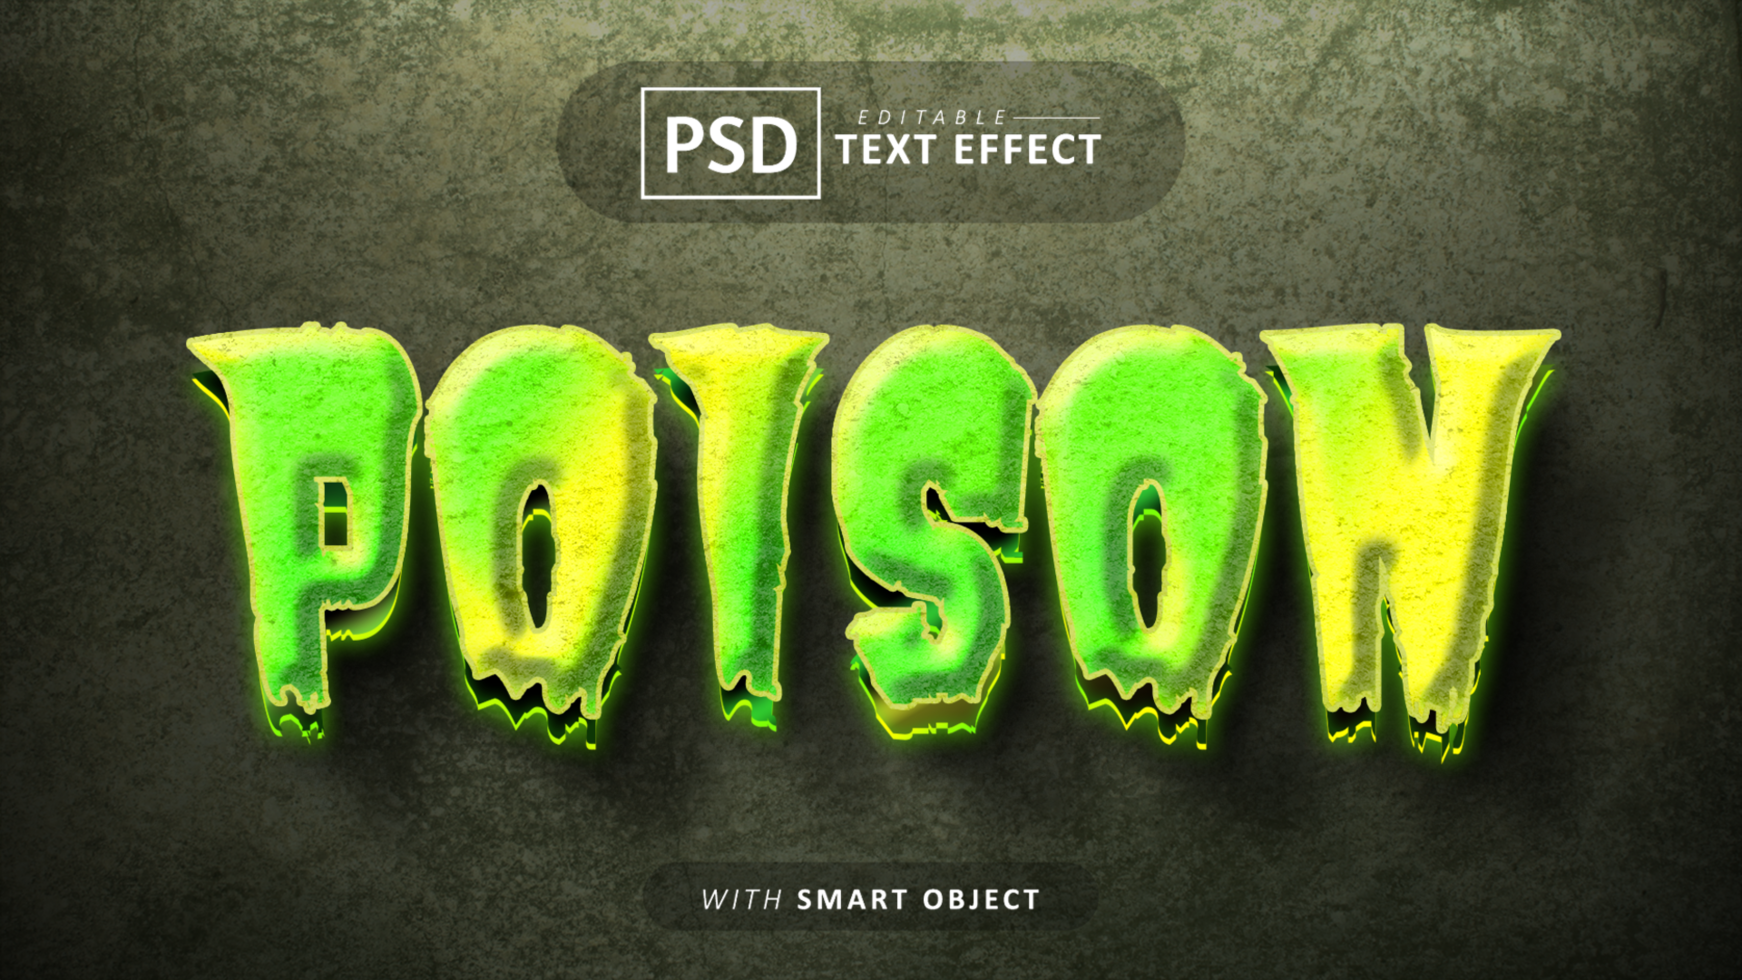 Poison 3d text effect editable psd